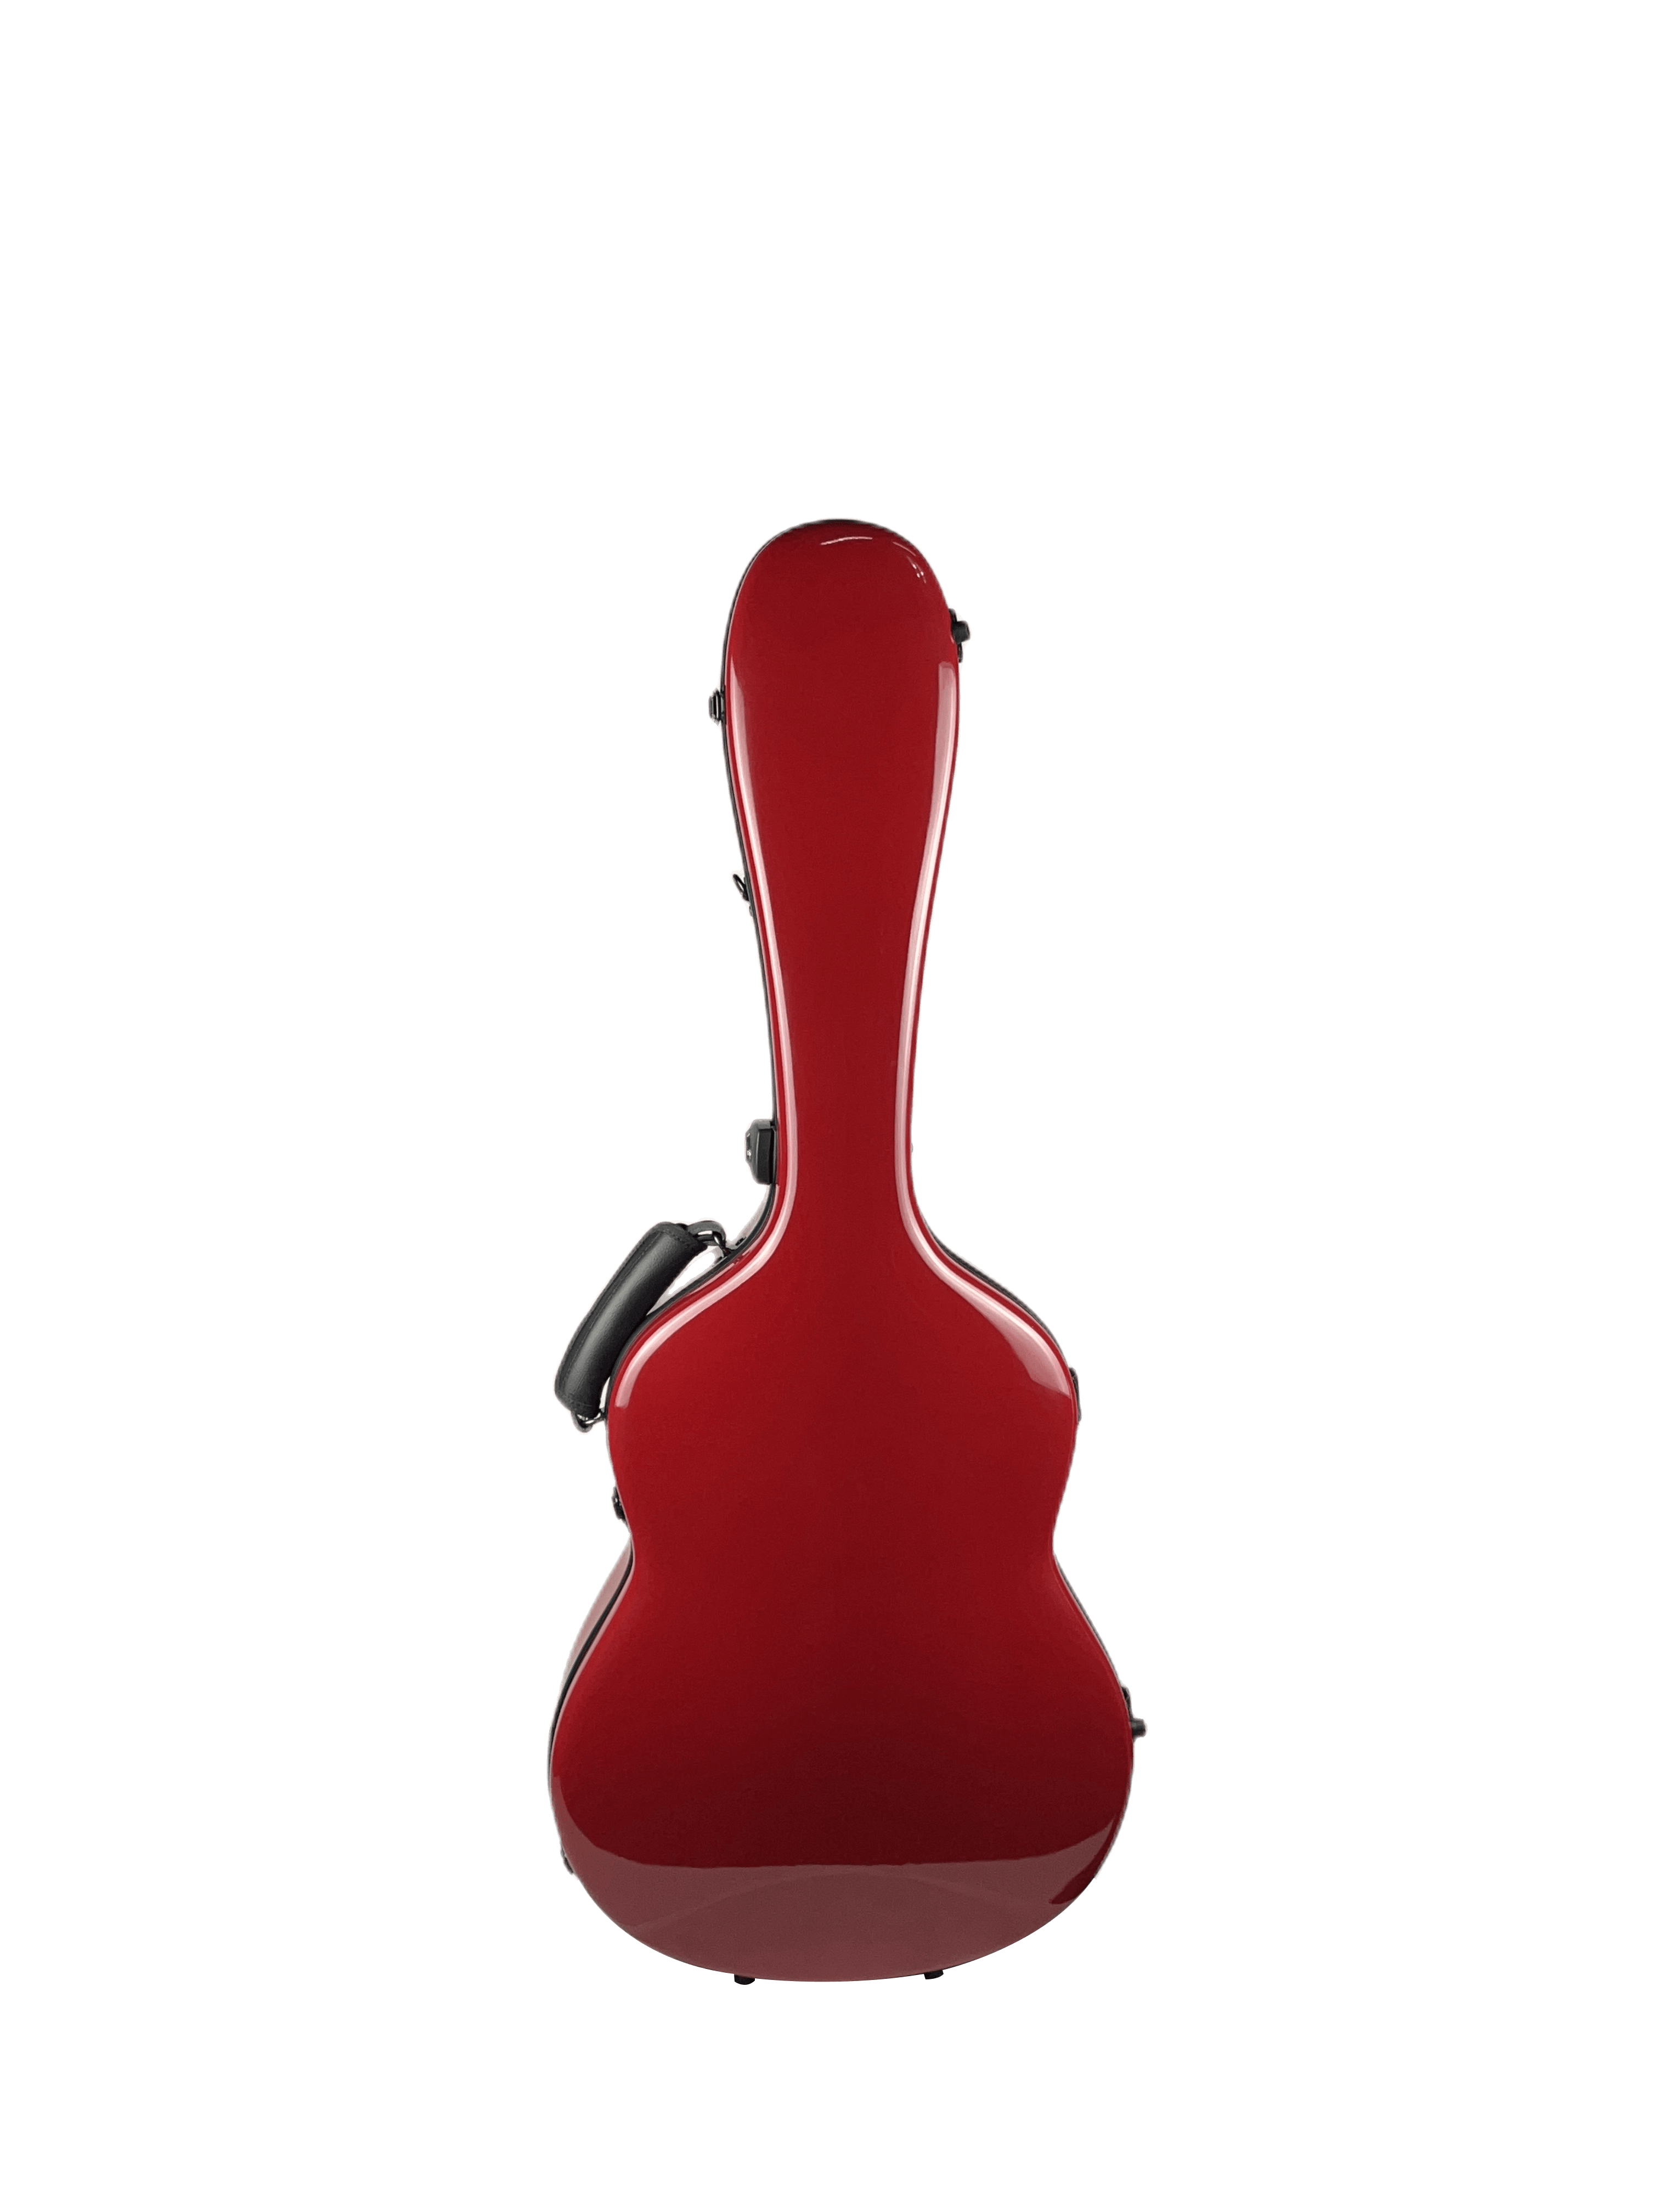 Carbon Case for Classical Guitar Acoustic, Flamenco guitar, Red Gloss - mackazie